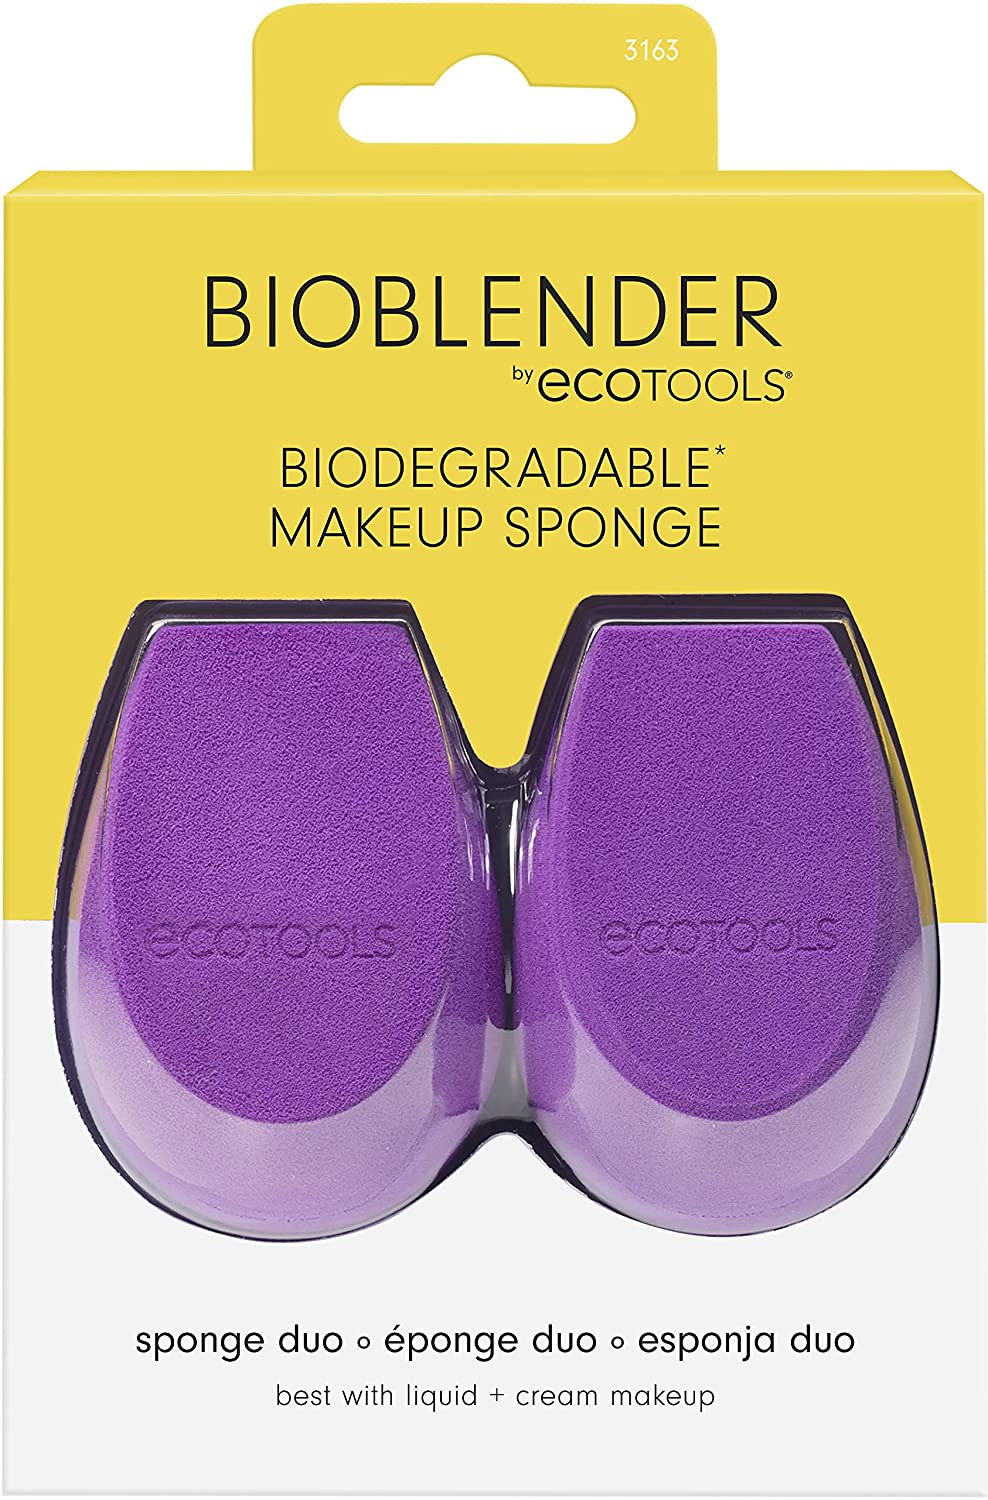 BioBlender Makeup Sponges Crazy Cheap! Run!